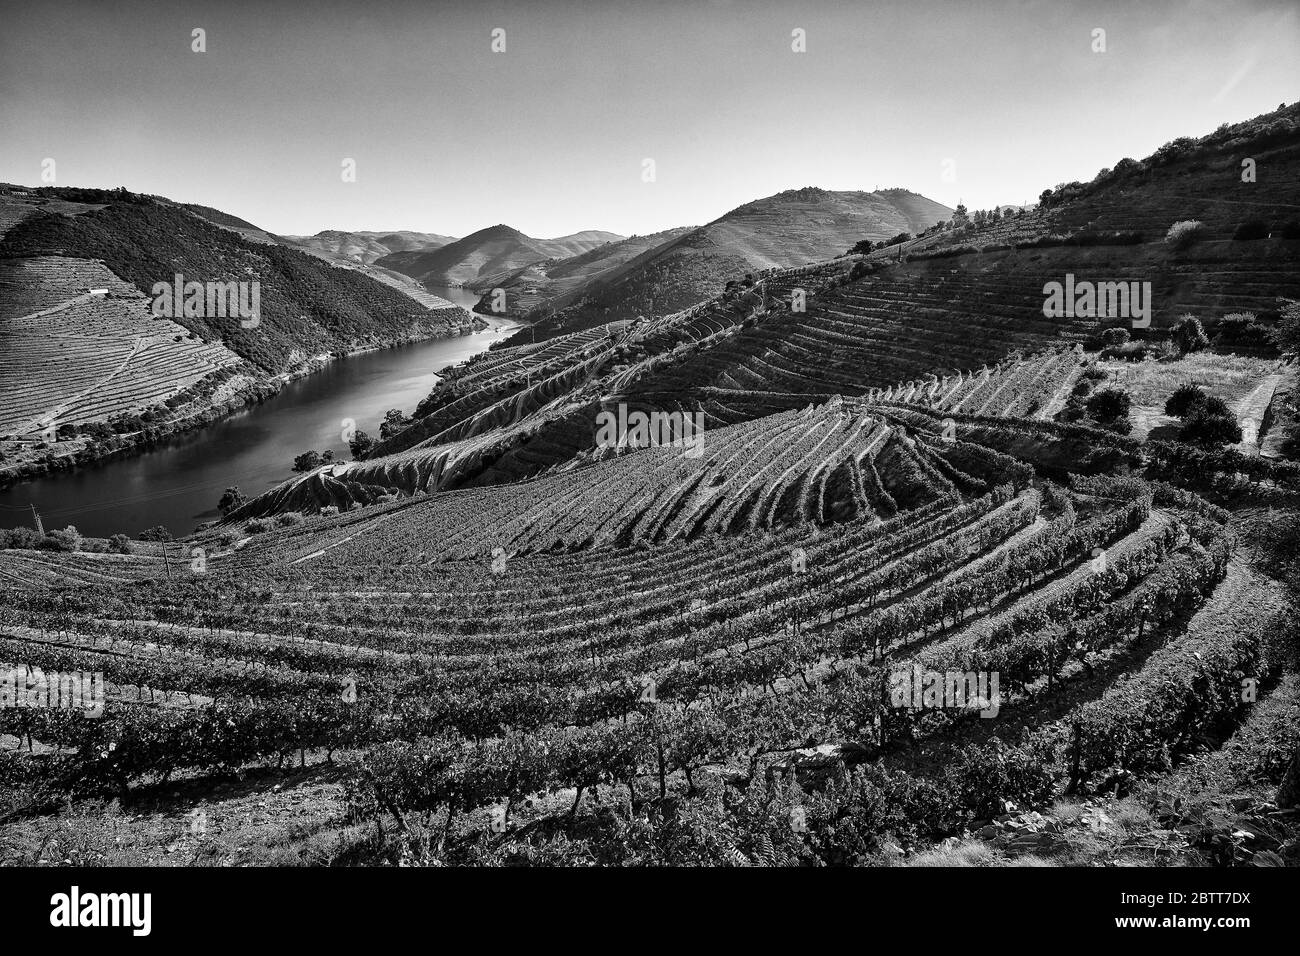 La valle del fiume Douro, nel nord del Portogallo, è il luogo di nascita di Port Wine. La regione è conosciuta per i suoi vigneti, i mandorli e gli ulivi. Foto Stock